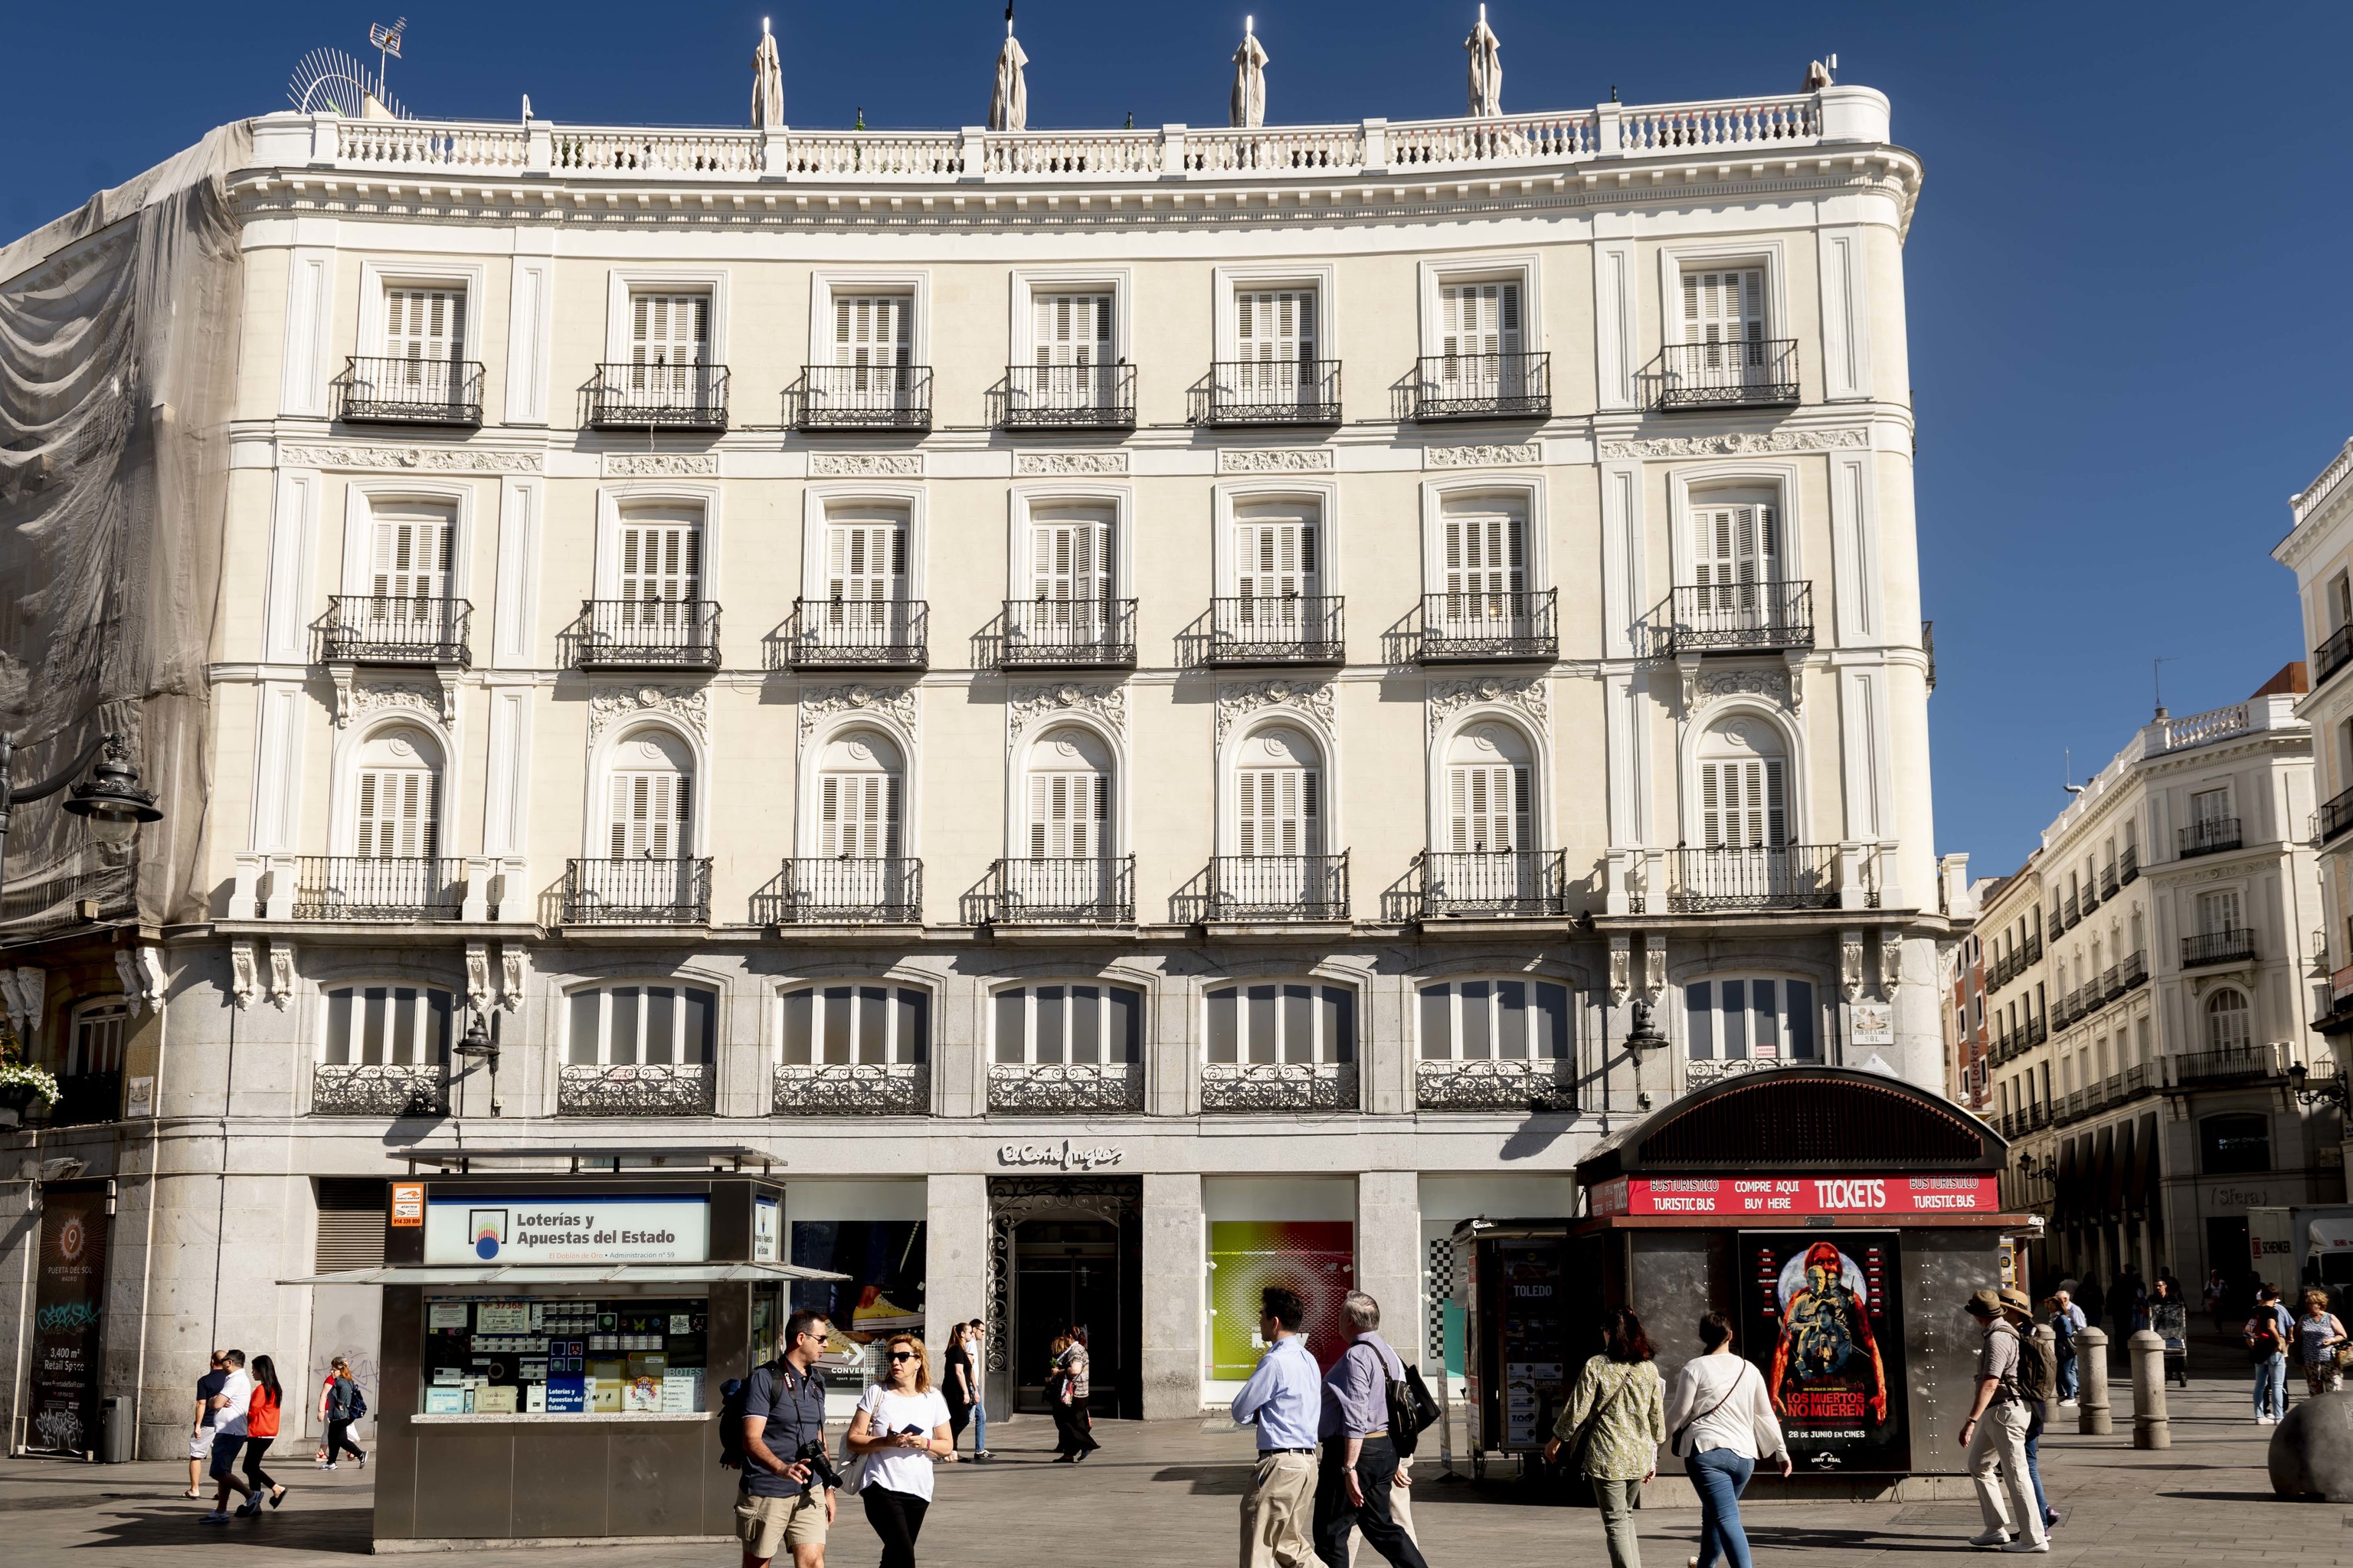 El Corte Inglés se va de compras: adquiere otro edificio en la Puerta del Sol para liderar la oferta comercial en el epicentro del turismo madrileño